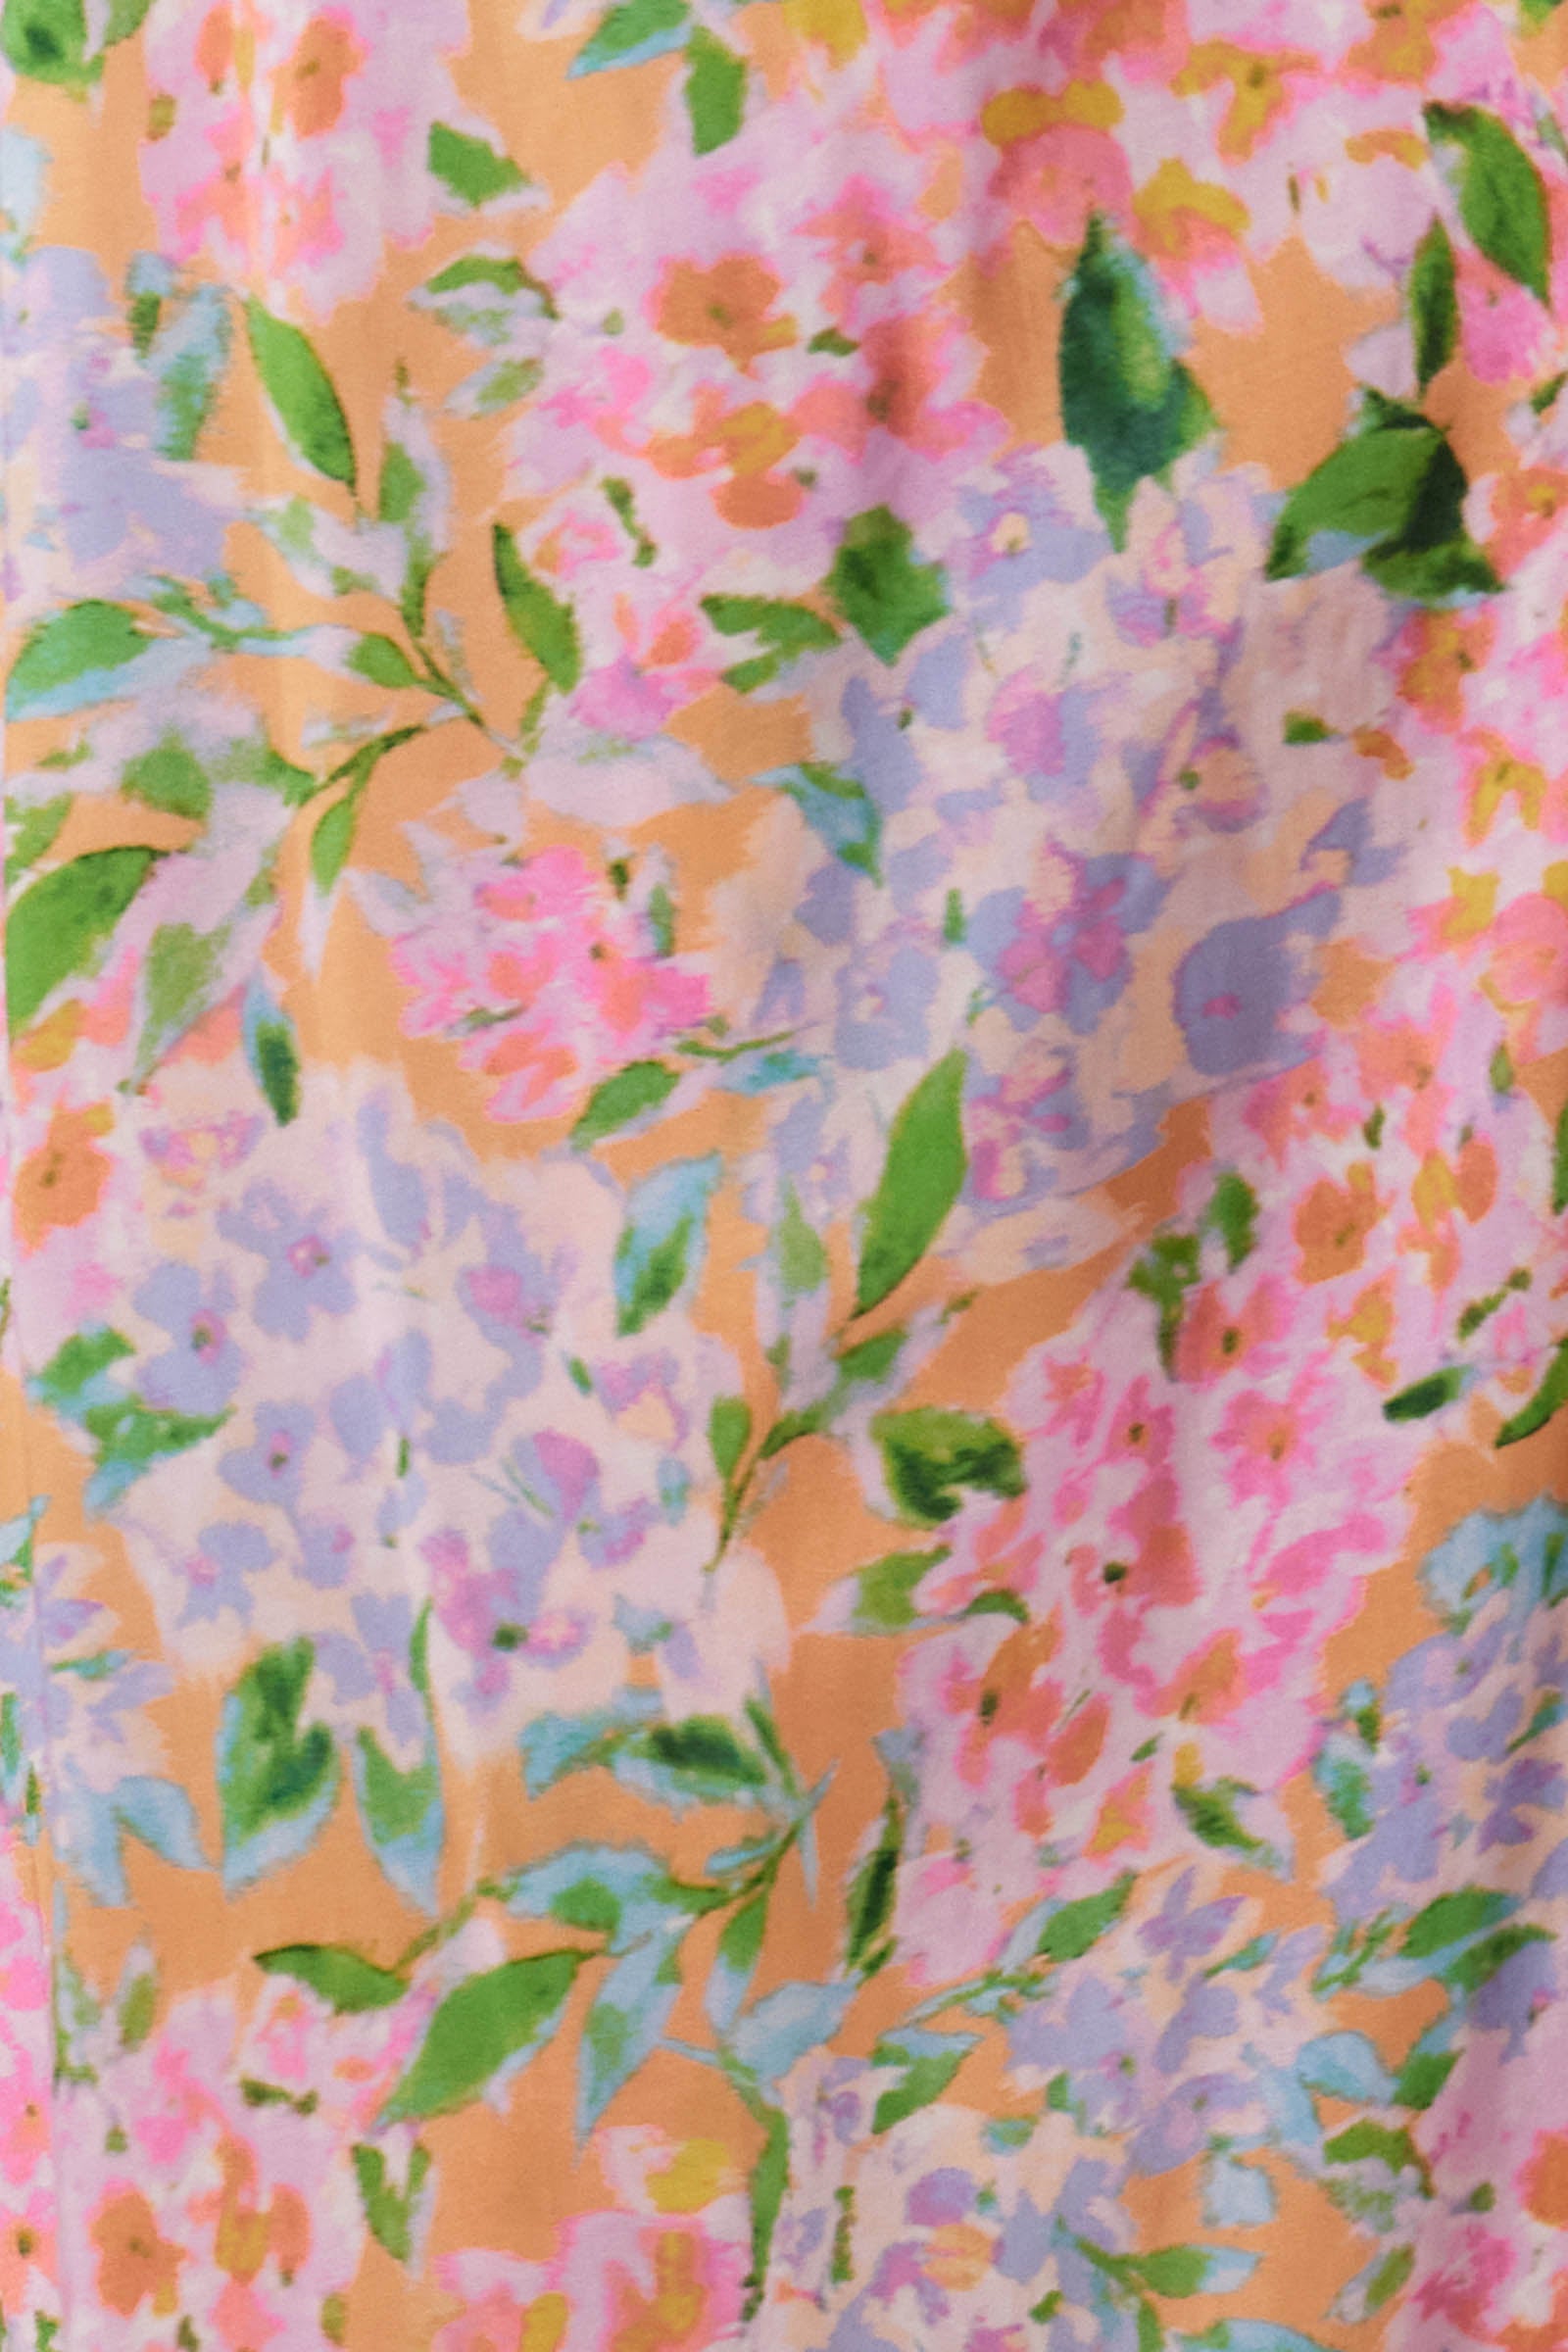 Botanical Tie Dress - Sunset Hydrangea - Isle of Mine Clothing - Dress Mid One Size